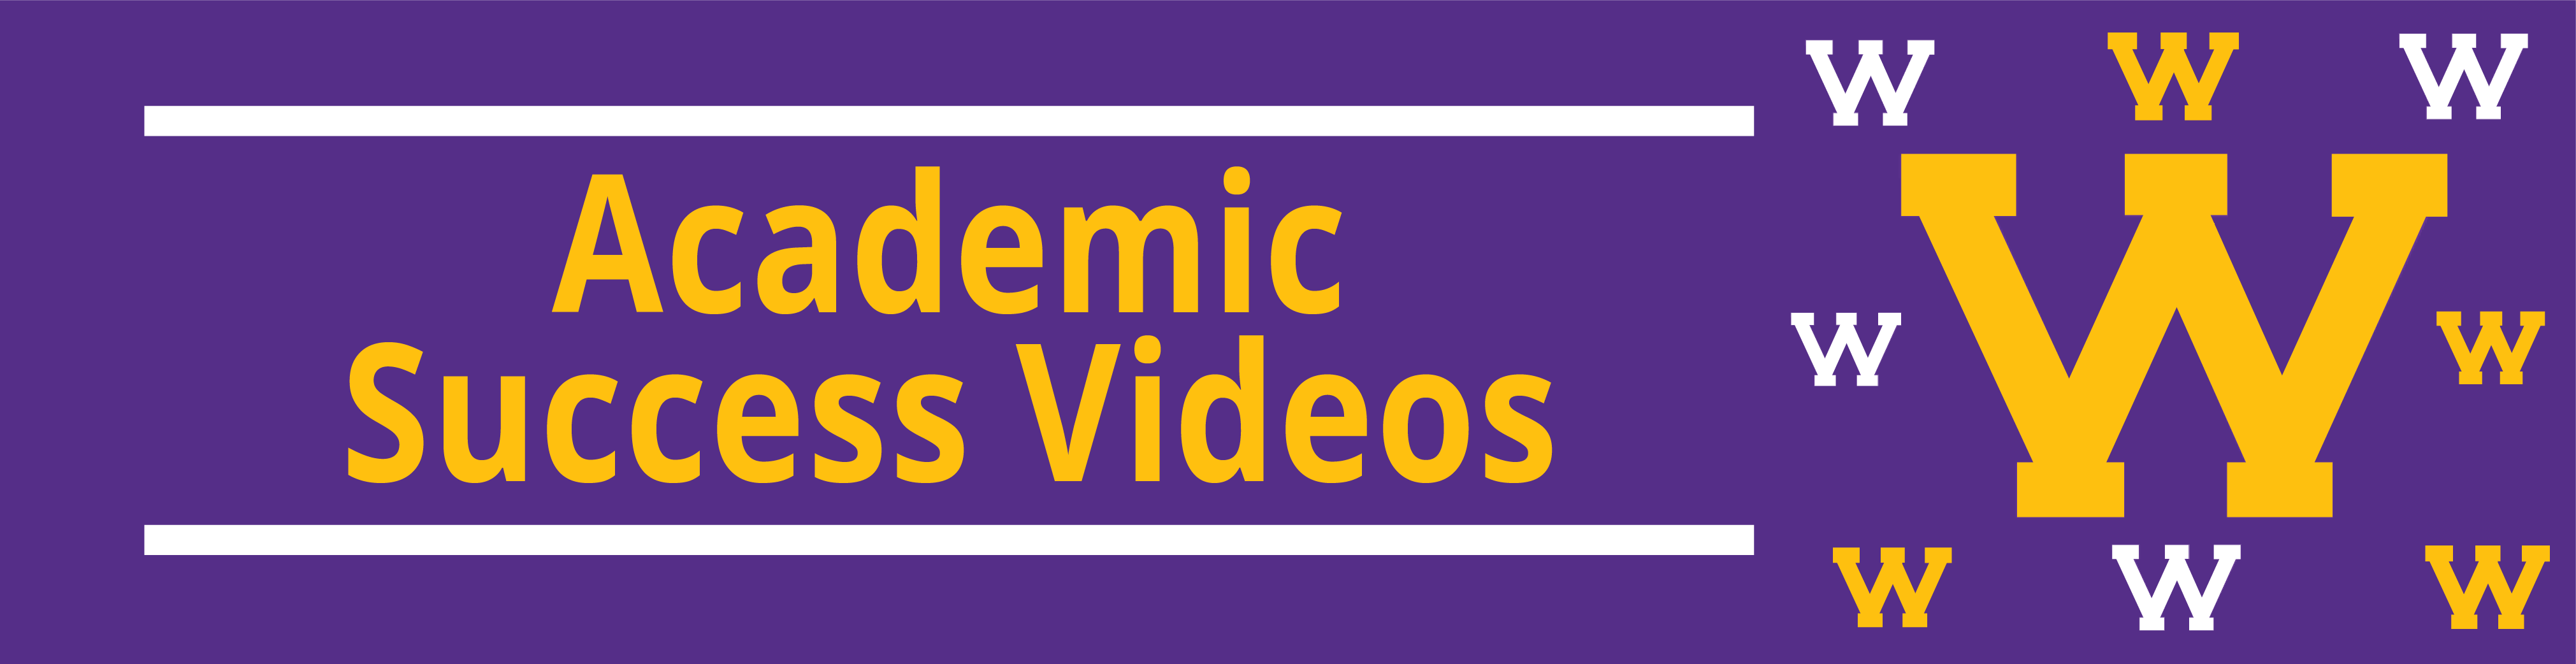 Academic Success Videos